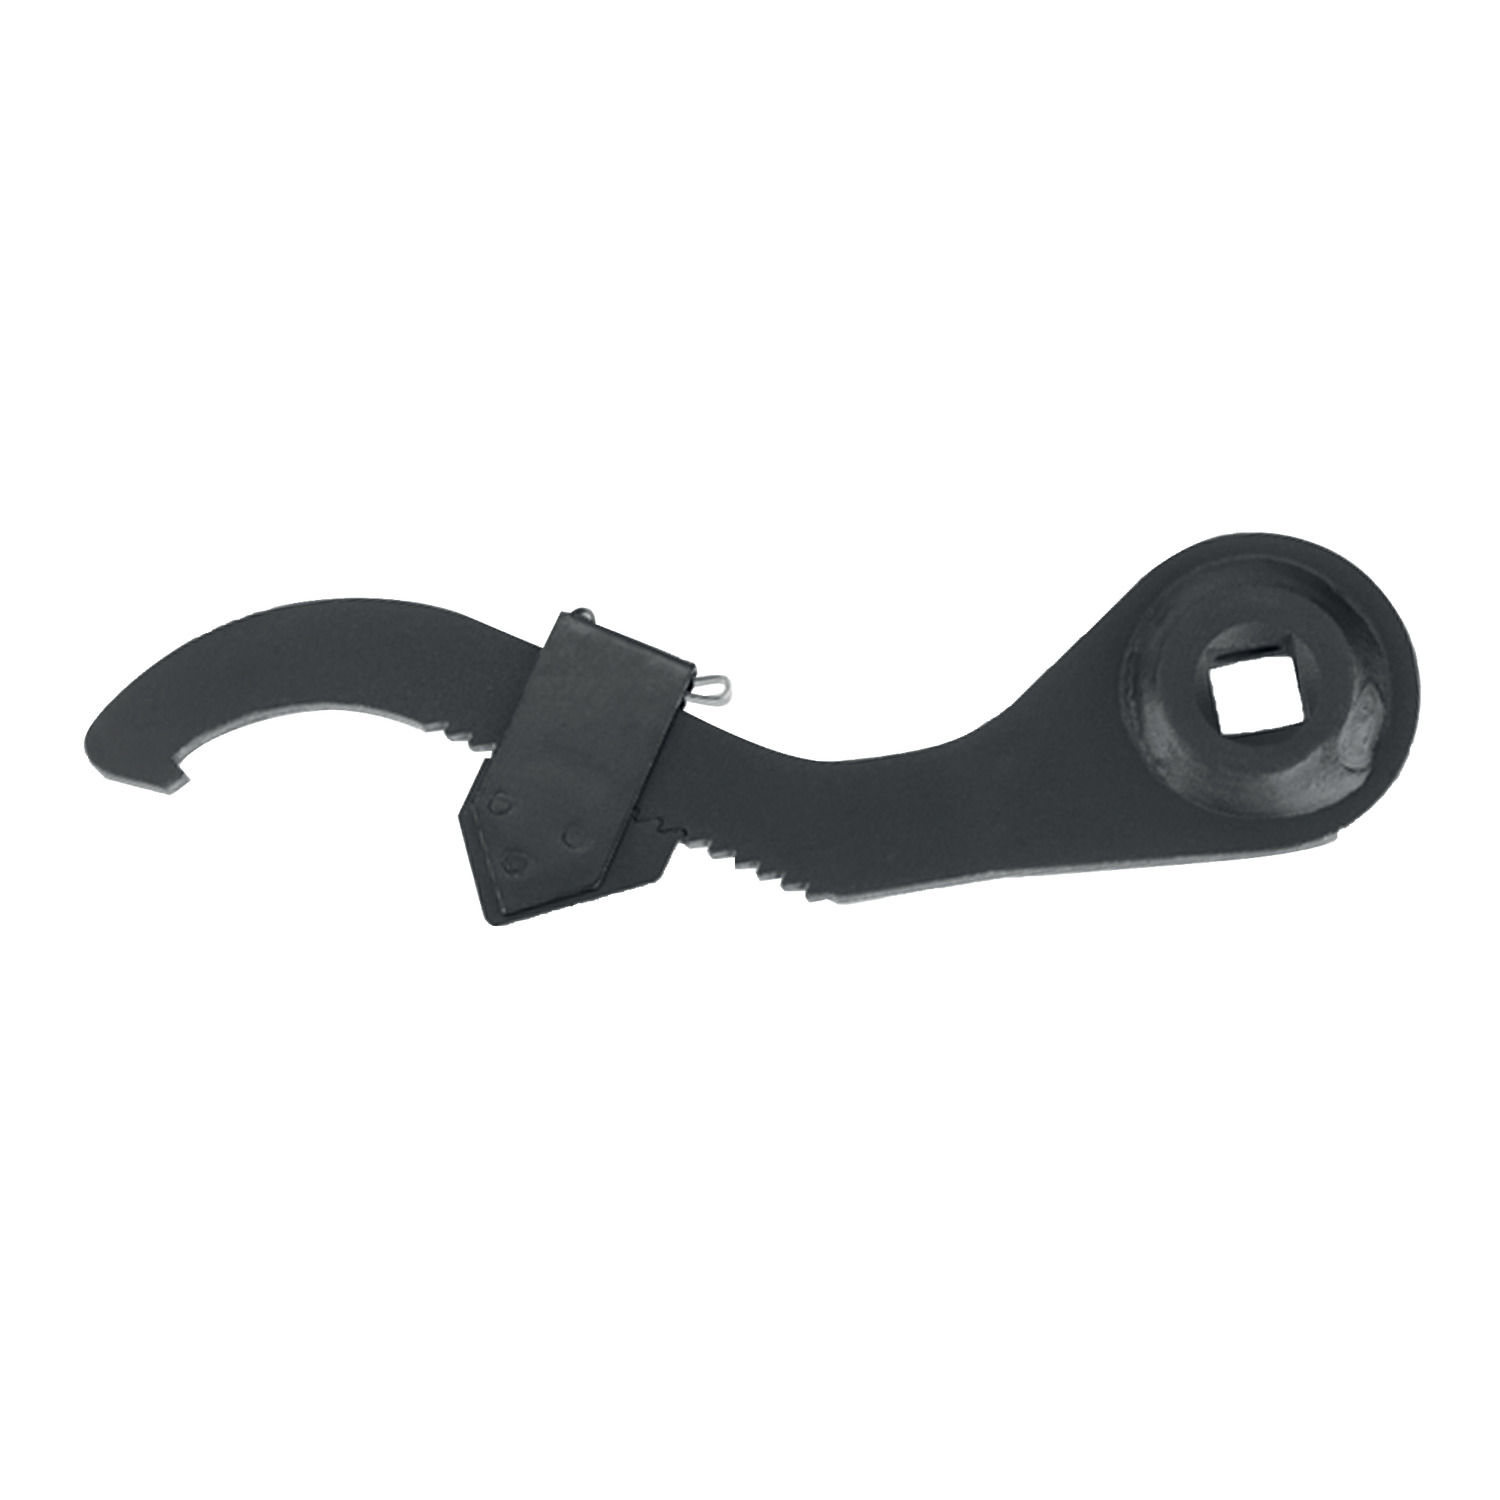 95105 - Adjustable Hook Spanner